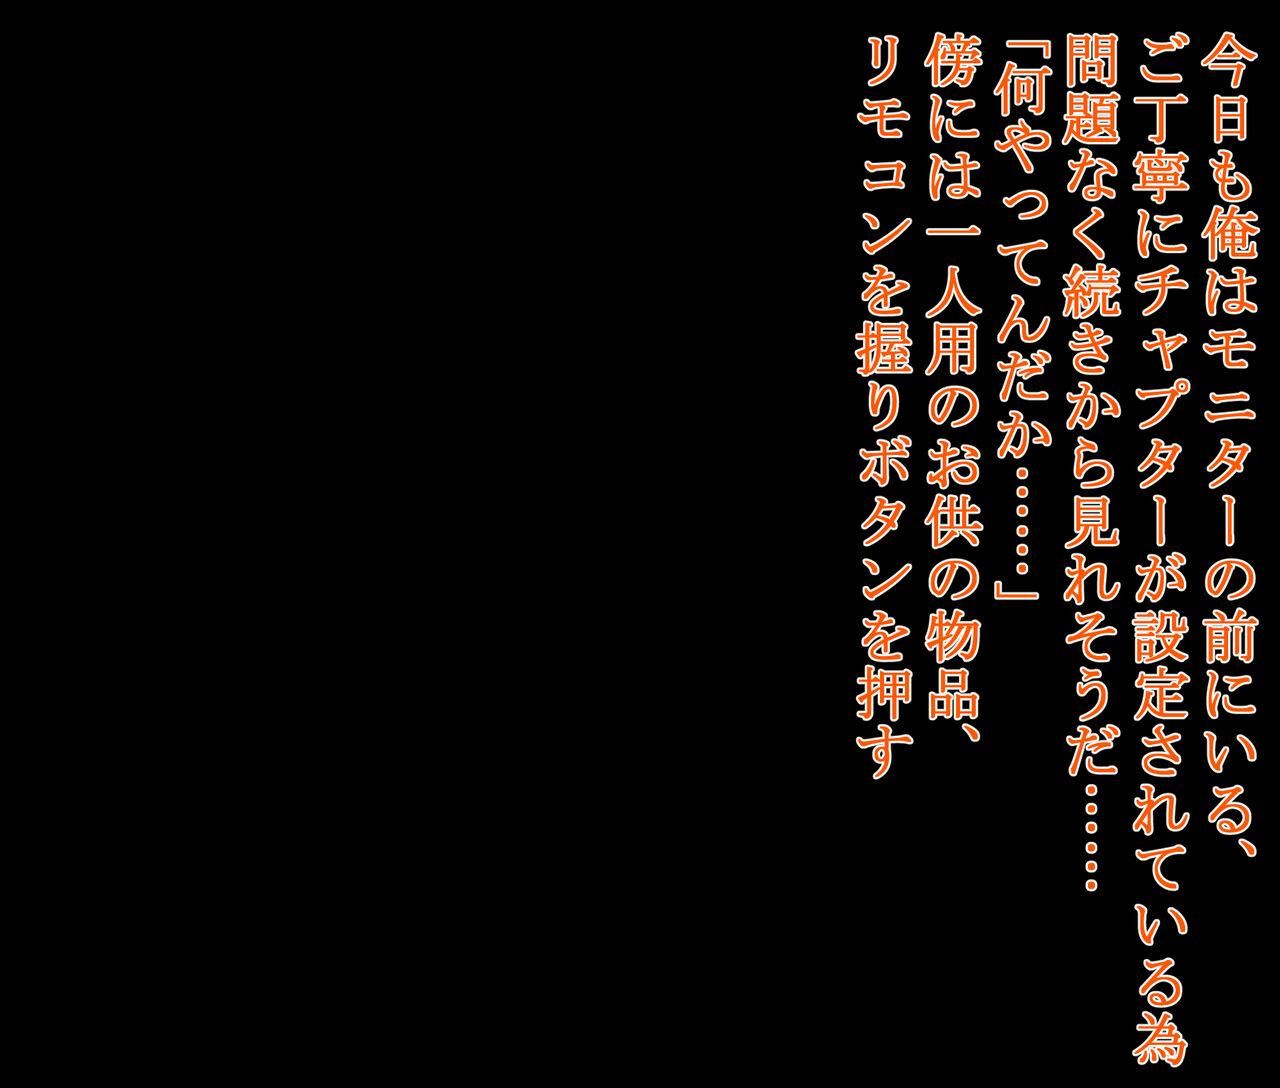 hīrō kuro neko vs kankaku kyōyū OB ‼ kage kaku enkaku chōkyō de yuki ma kuri ‼～ seigi no mikata no rīdā kara kuri chi 〇 po onaho ni ochiru shunkan ～ 219